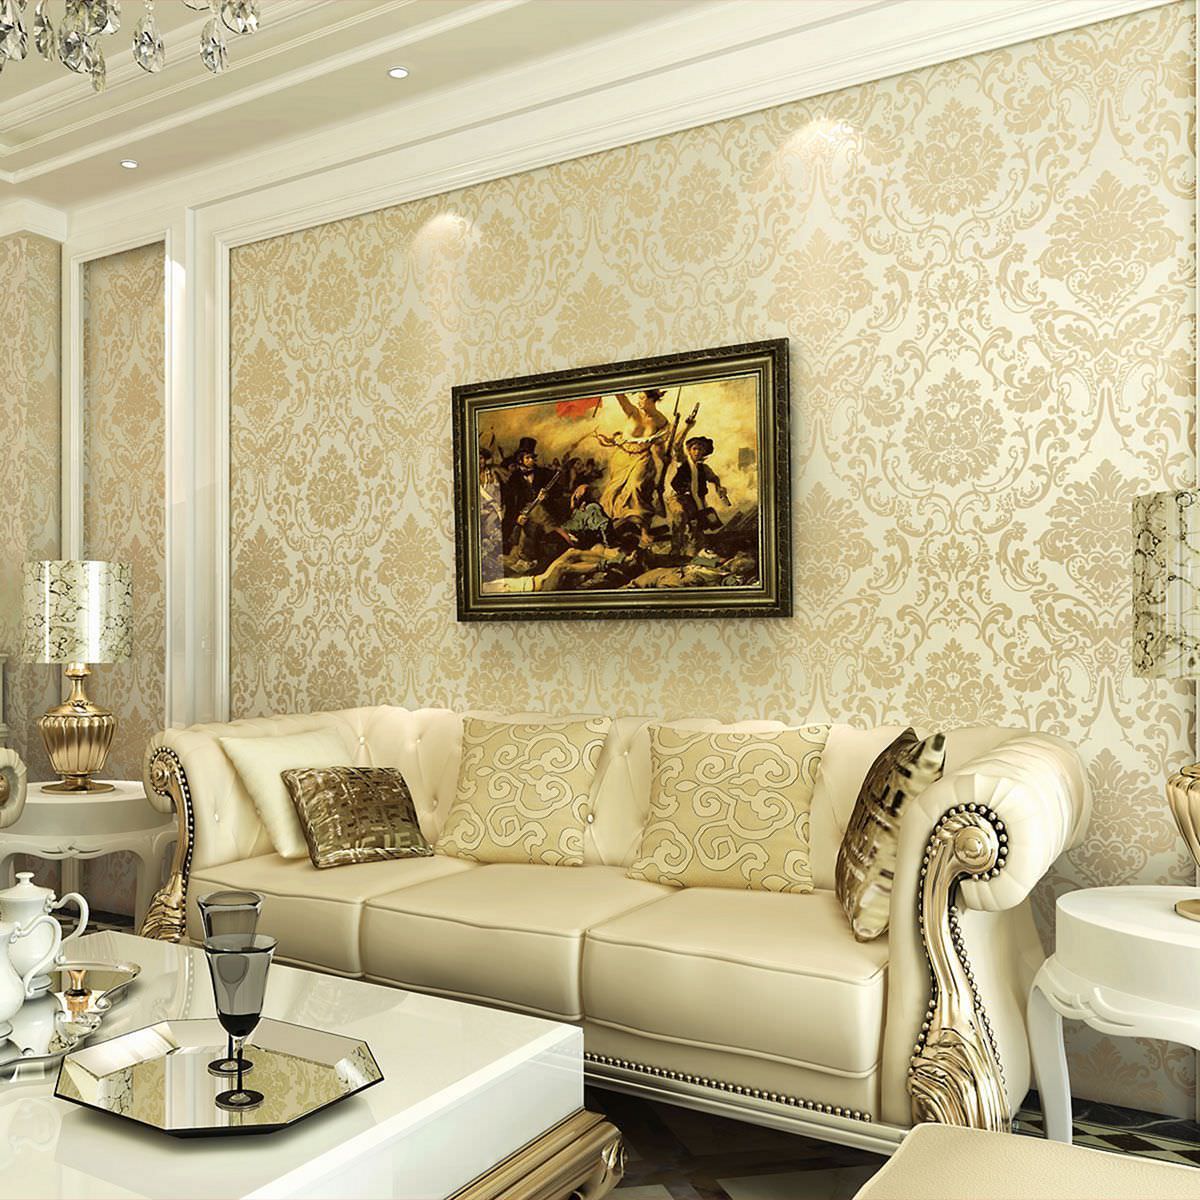 Giấy dán tường hoạ tiết phong cách cổ điển trang trí phòng khách sang trọng